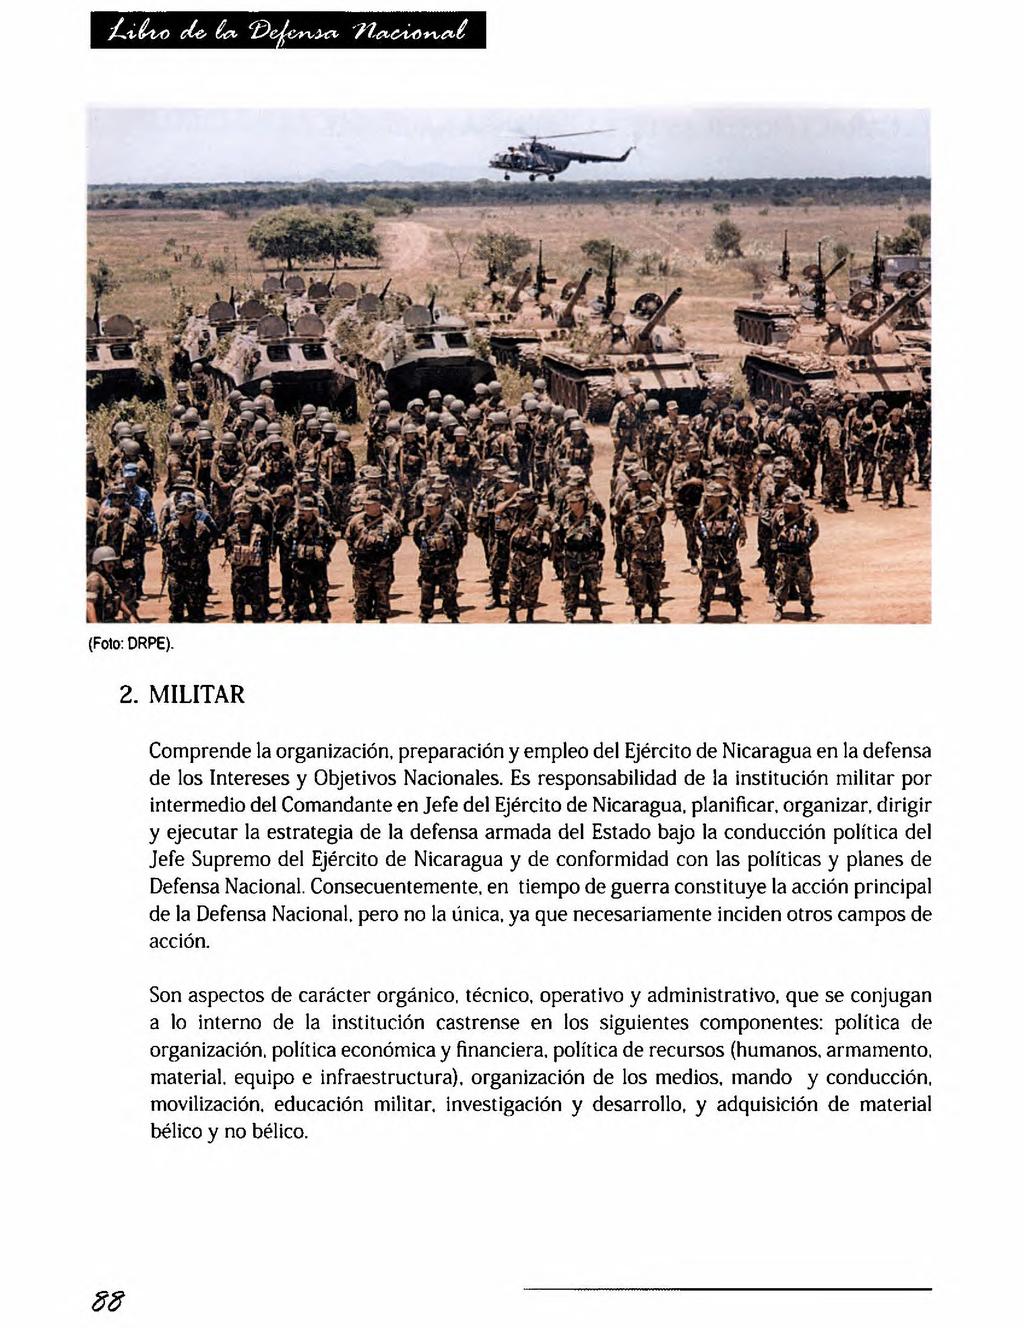 (Foto: DRPE). 2. MILITAR Comprende la organización, preparación y empleo del Ejército de Nicaragua en la defensa de los Intereses y Objetivos Nacionales.